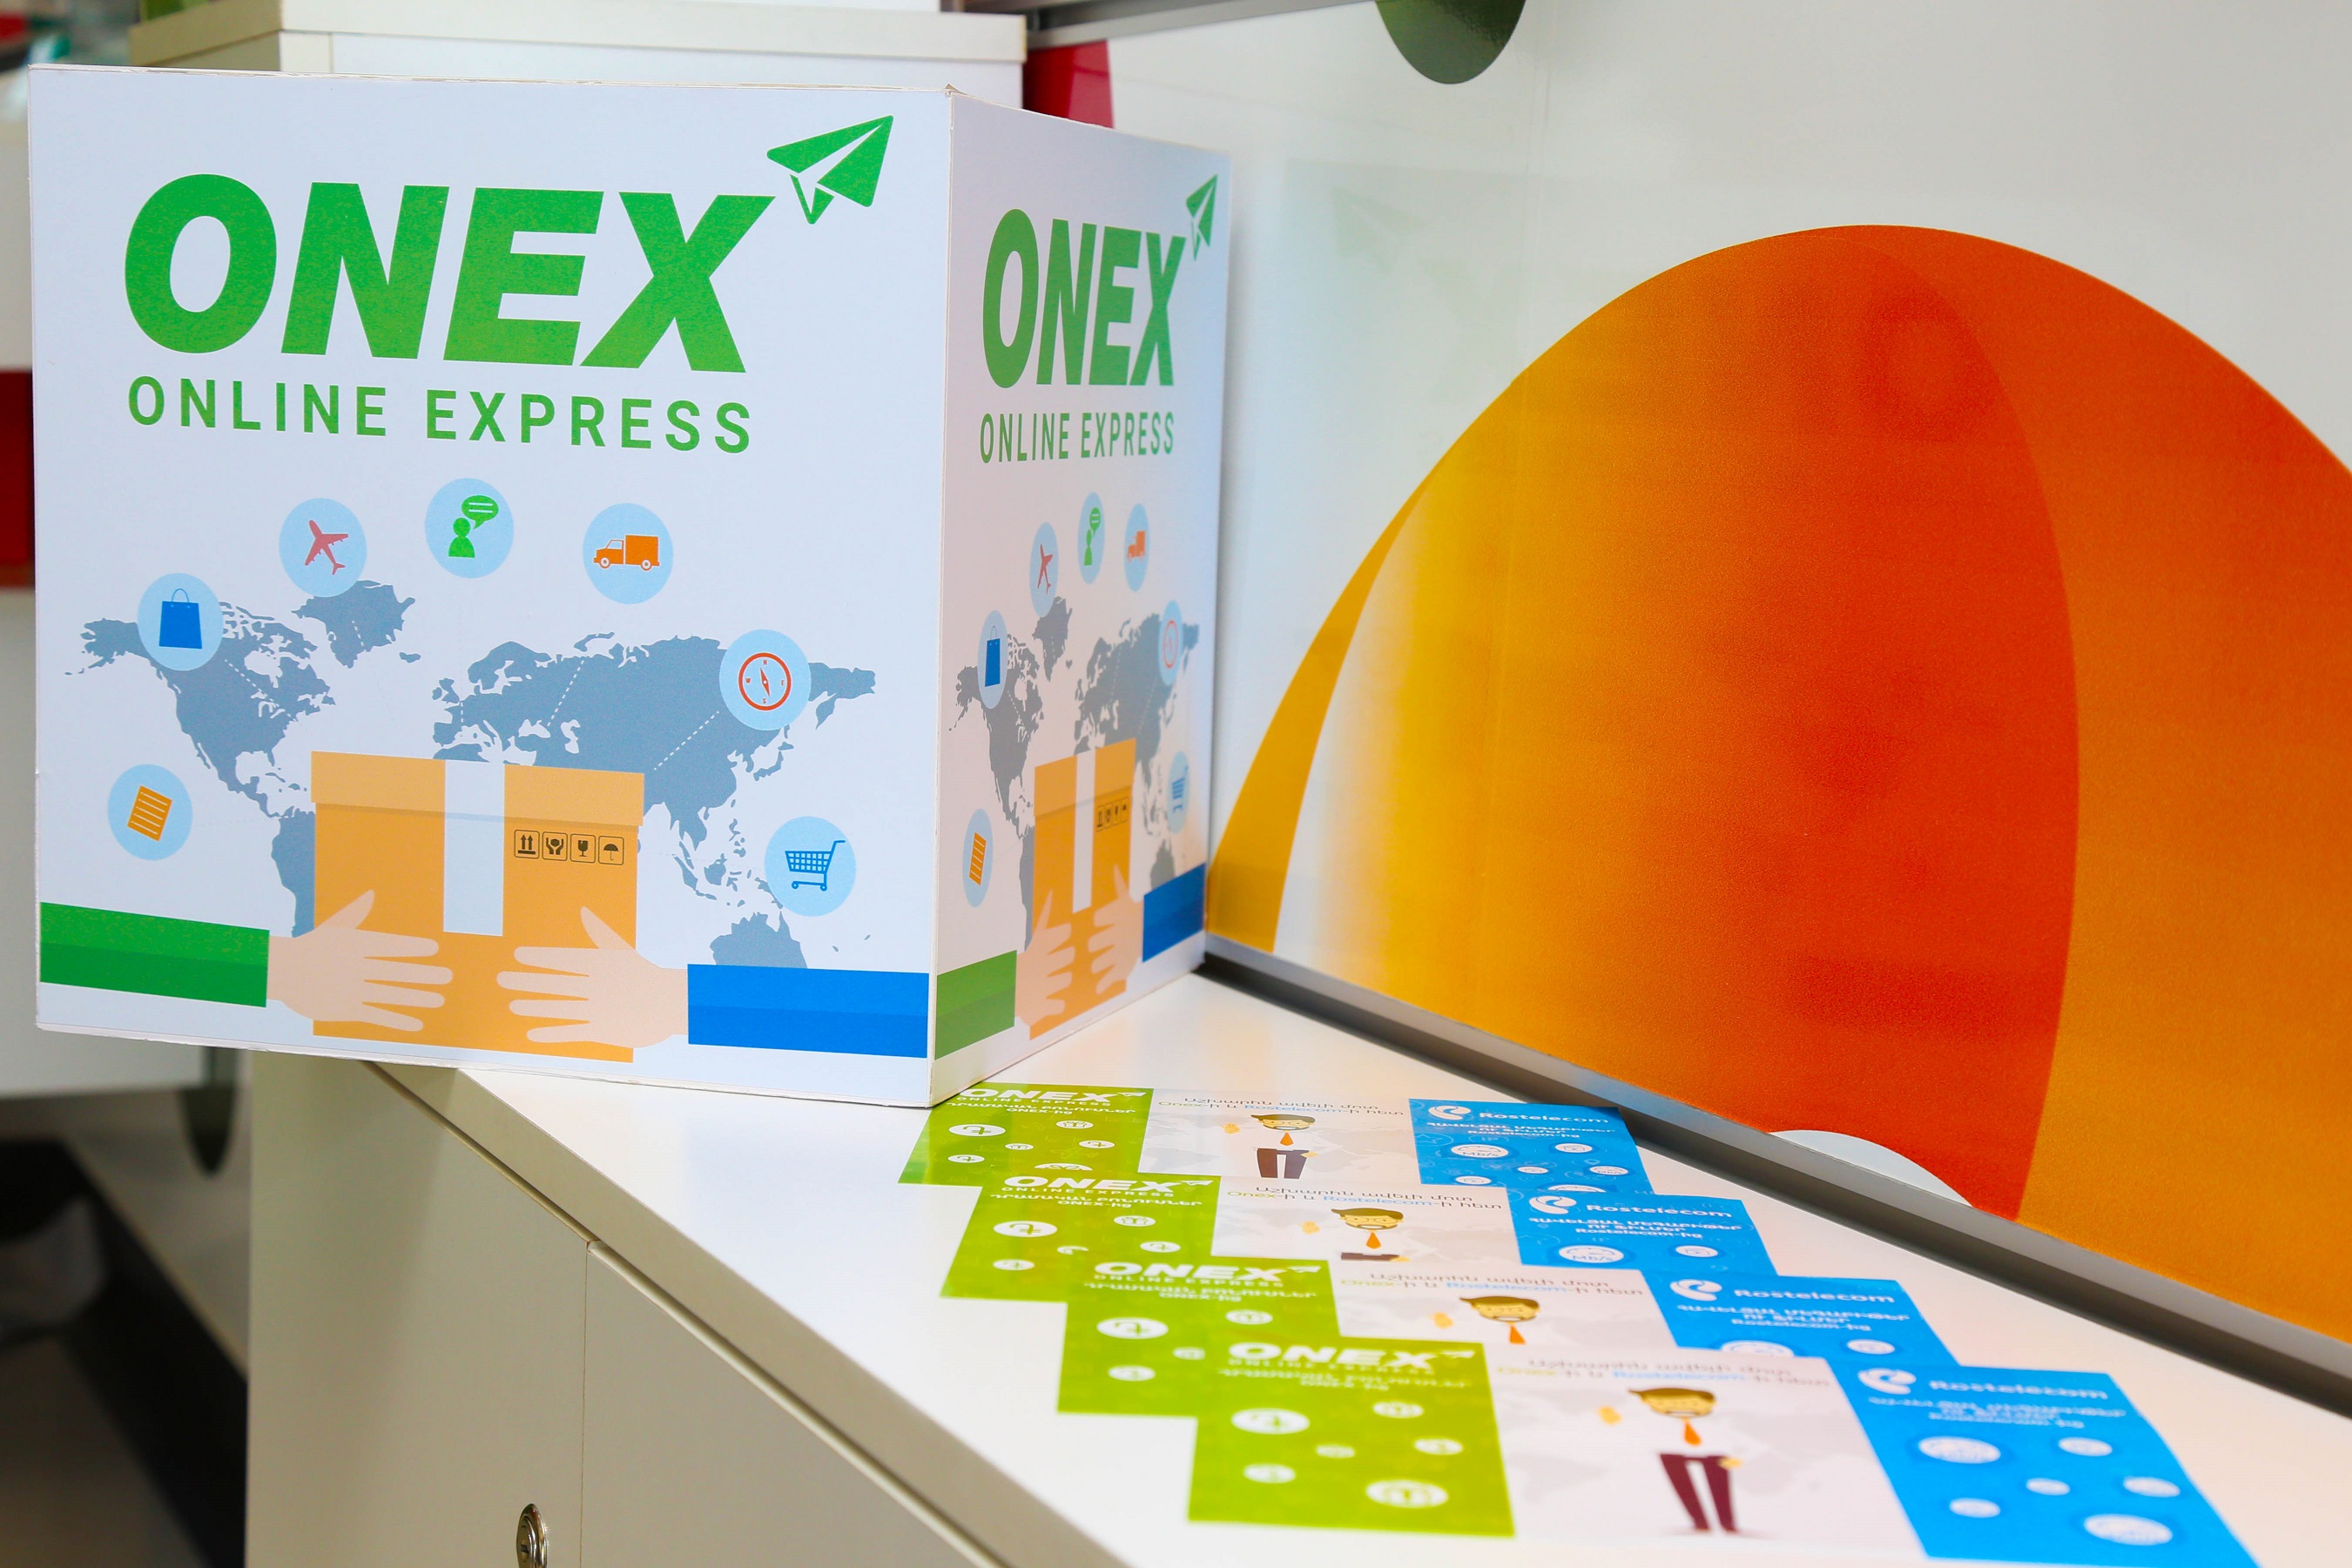 Ռոստելեկոմի բաժանորդները ONEX-ի միջոցով առցանց գնումների առաքումն իրականացնելիս կստանան հատուկ բոնուսներ